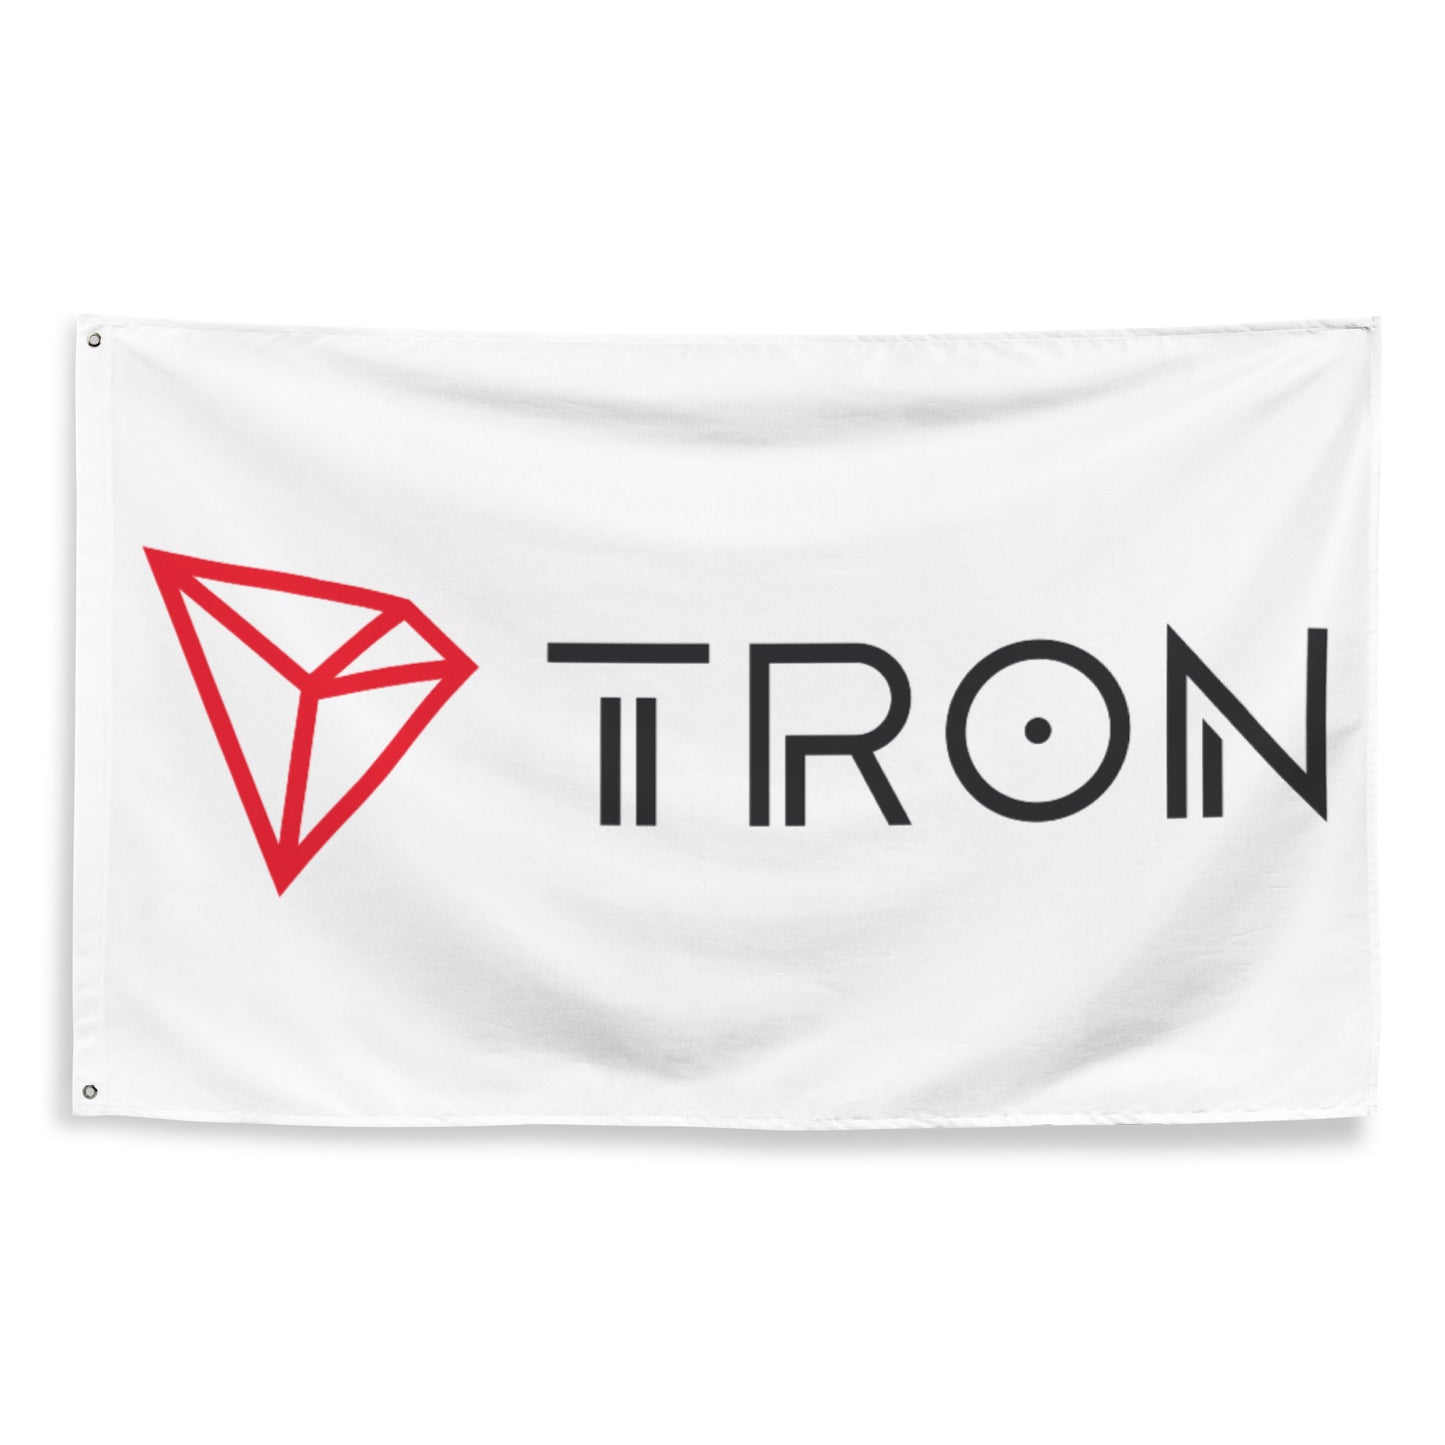 TRON (TRX) LOGO FLAG (V1)